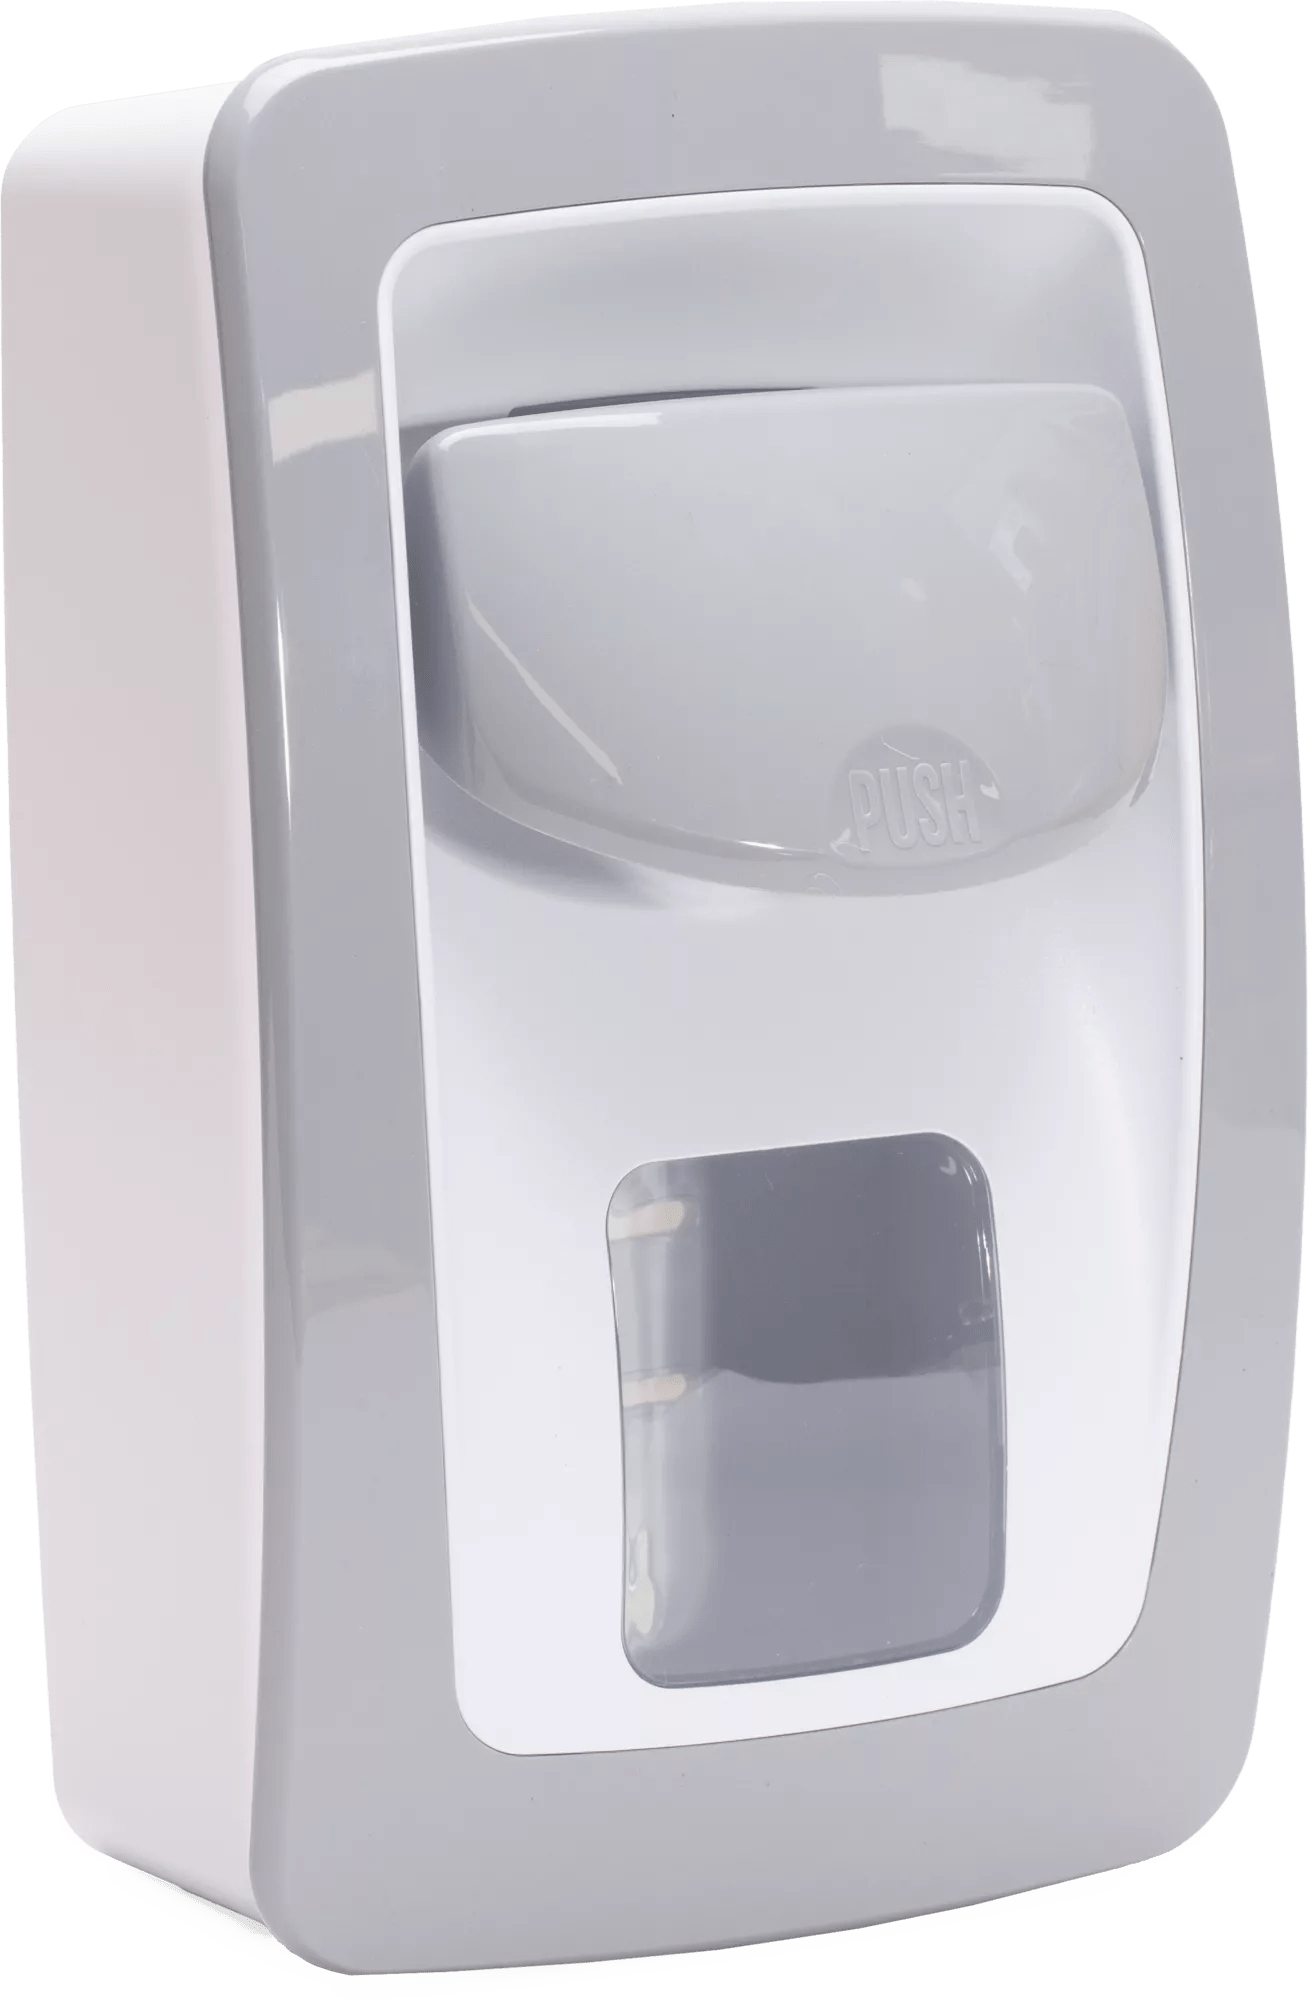 Manual Dispenser for Kim-Stat™ E2 Sanitizing Hand Cleaner